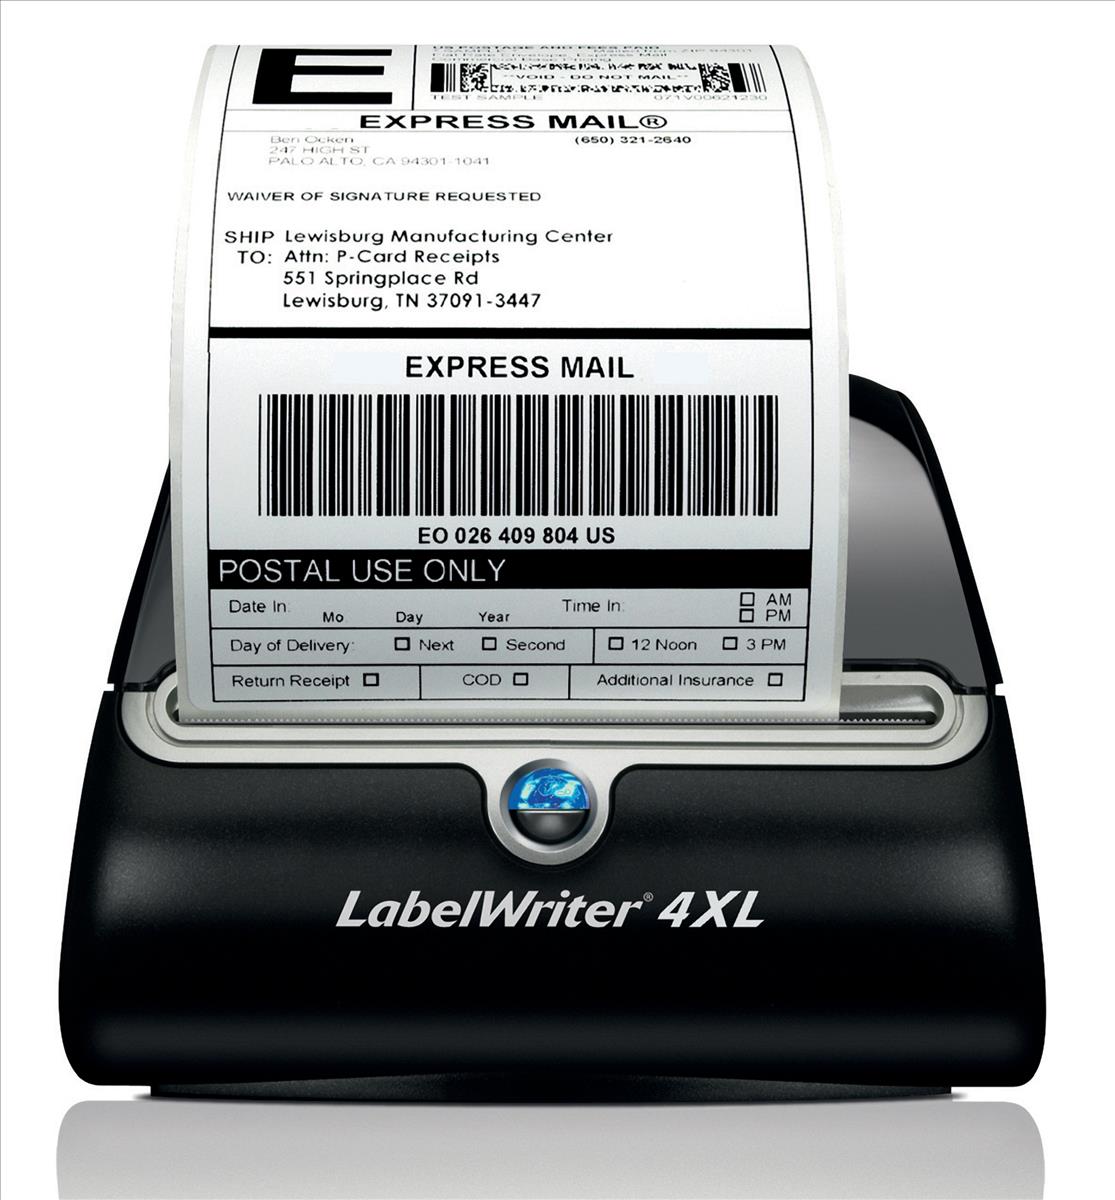 dymo labelwriter 400 software uk